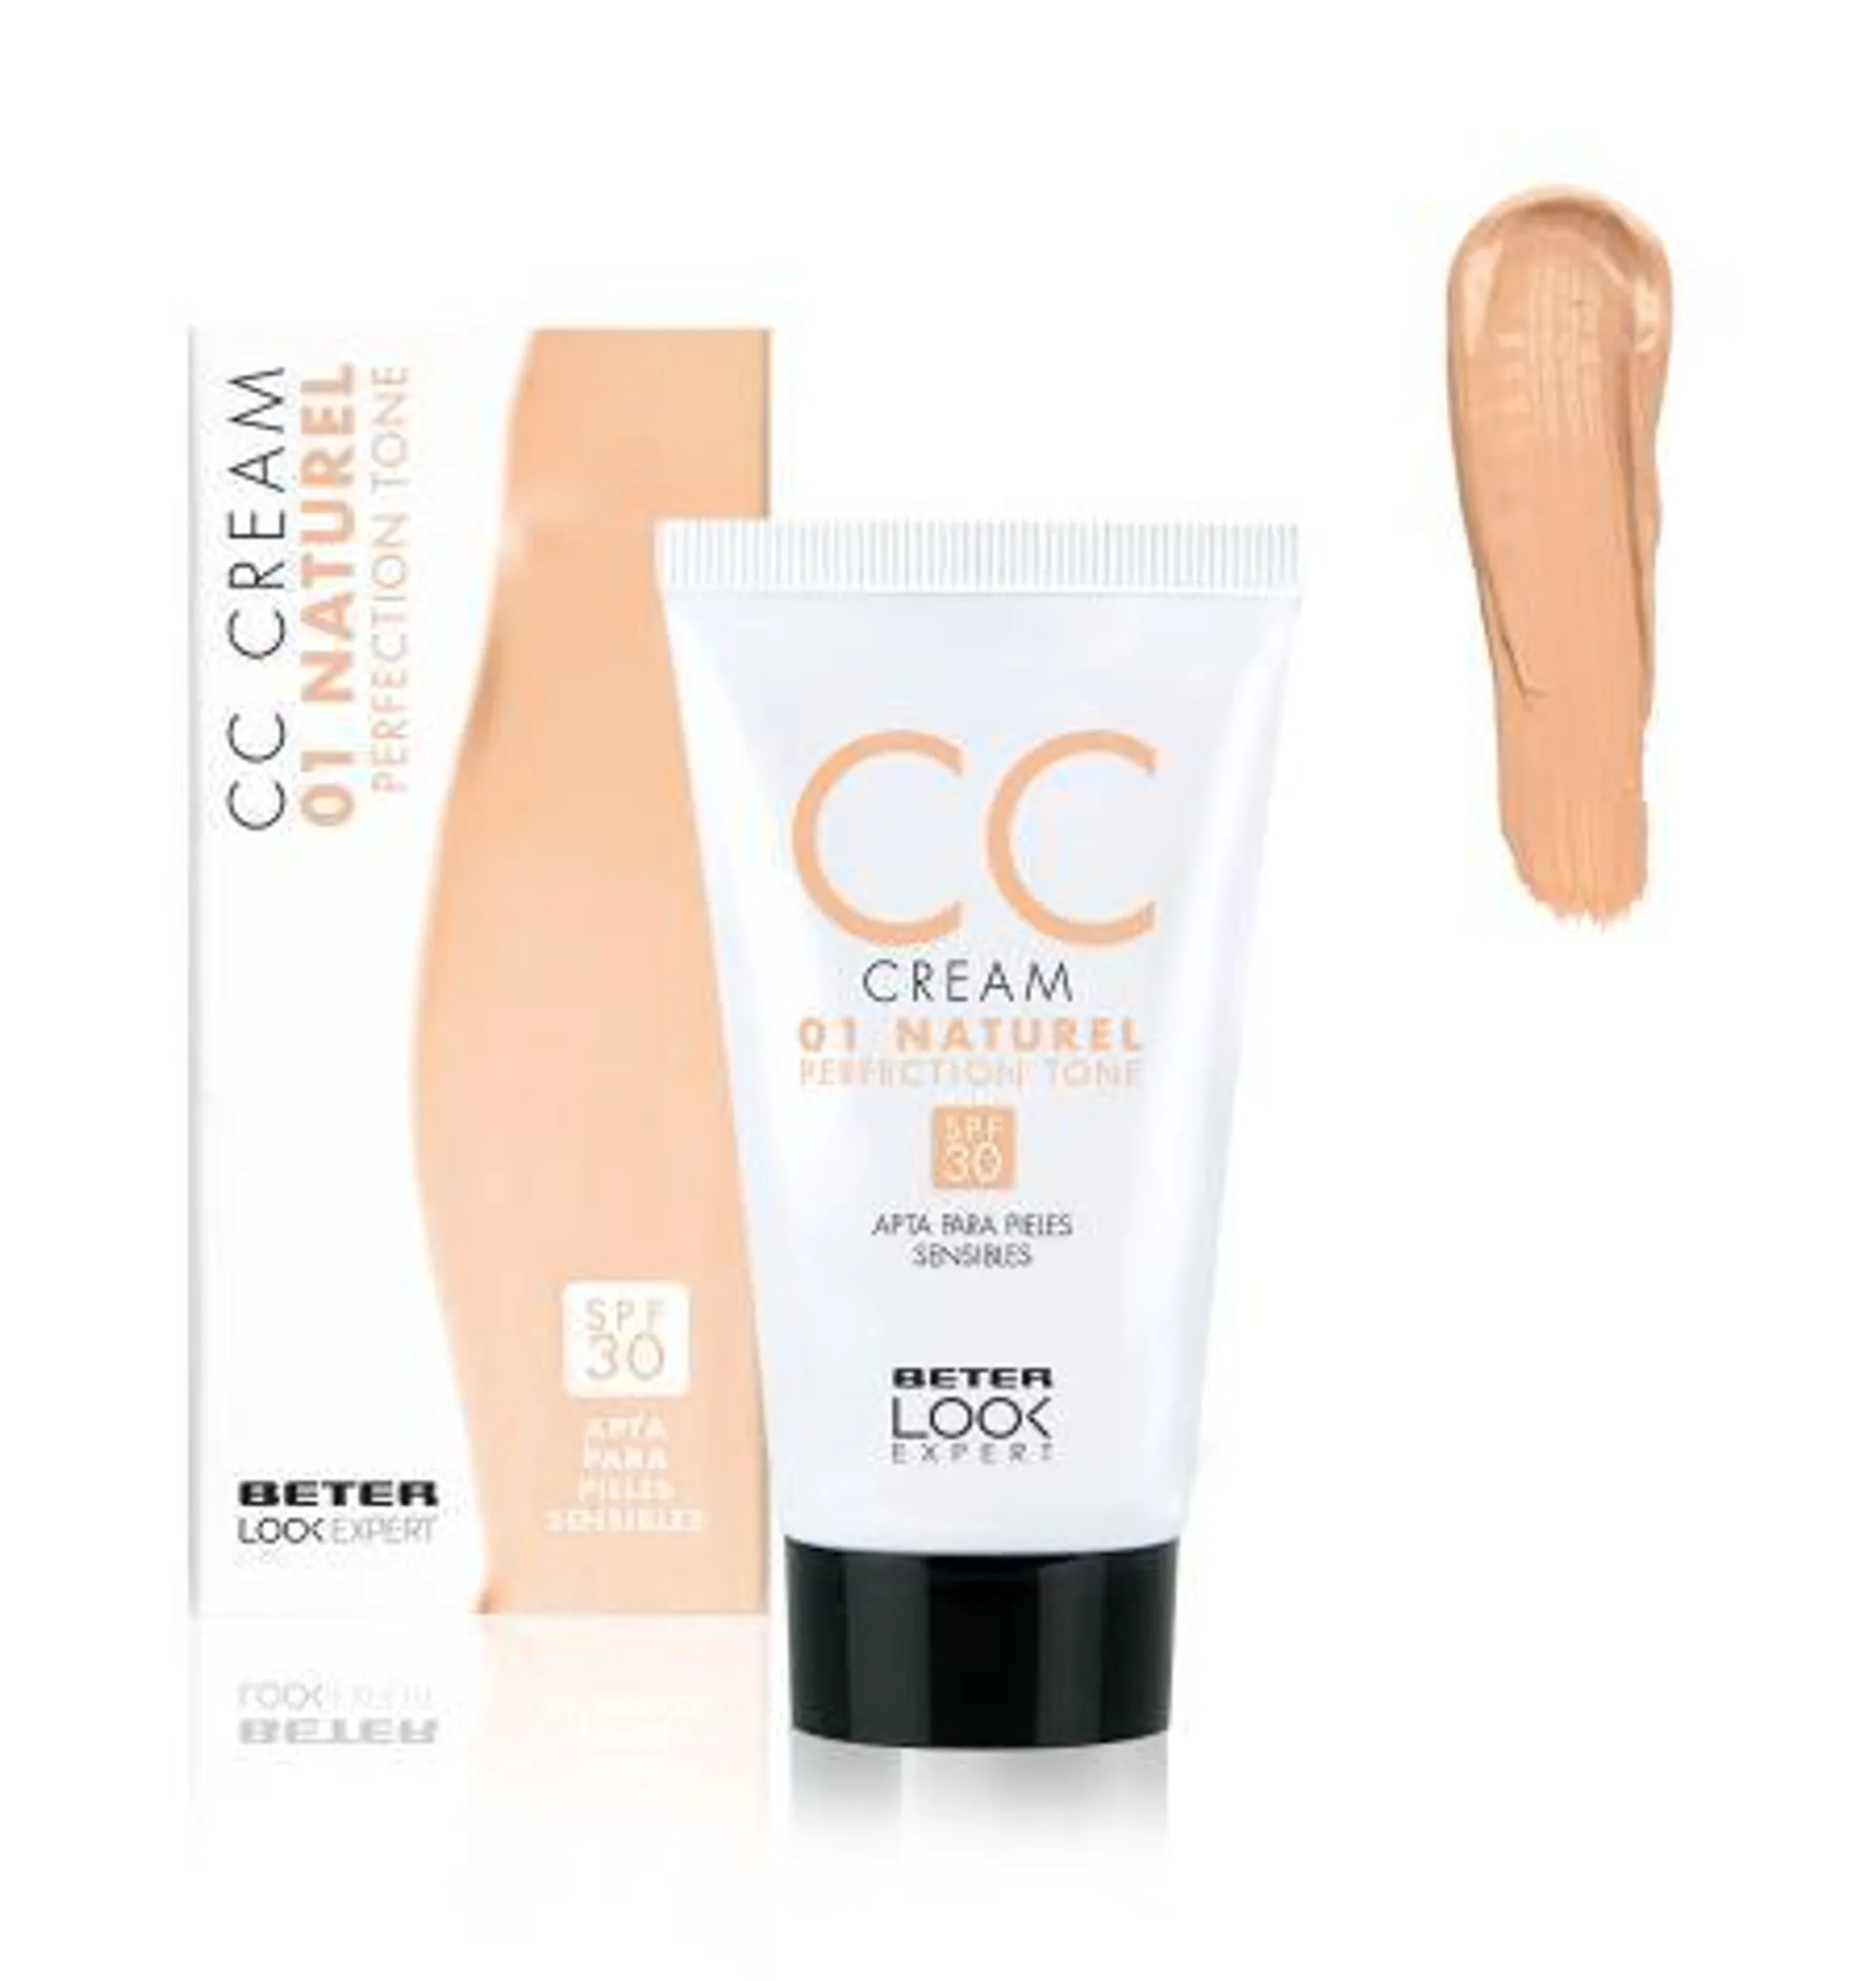 CC Cream perfection tone Look Expert Naturel